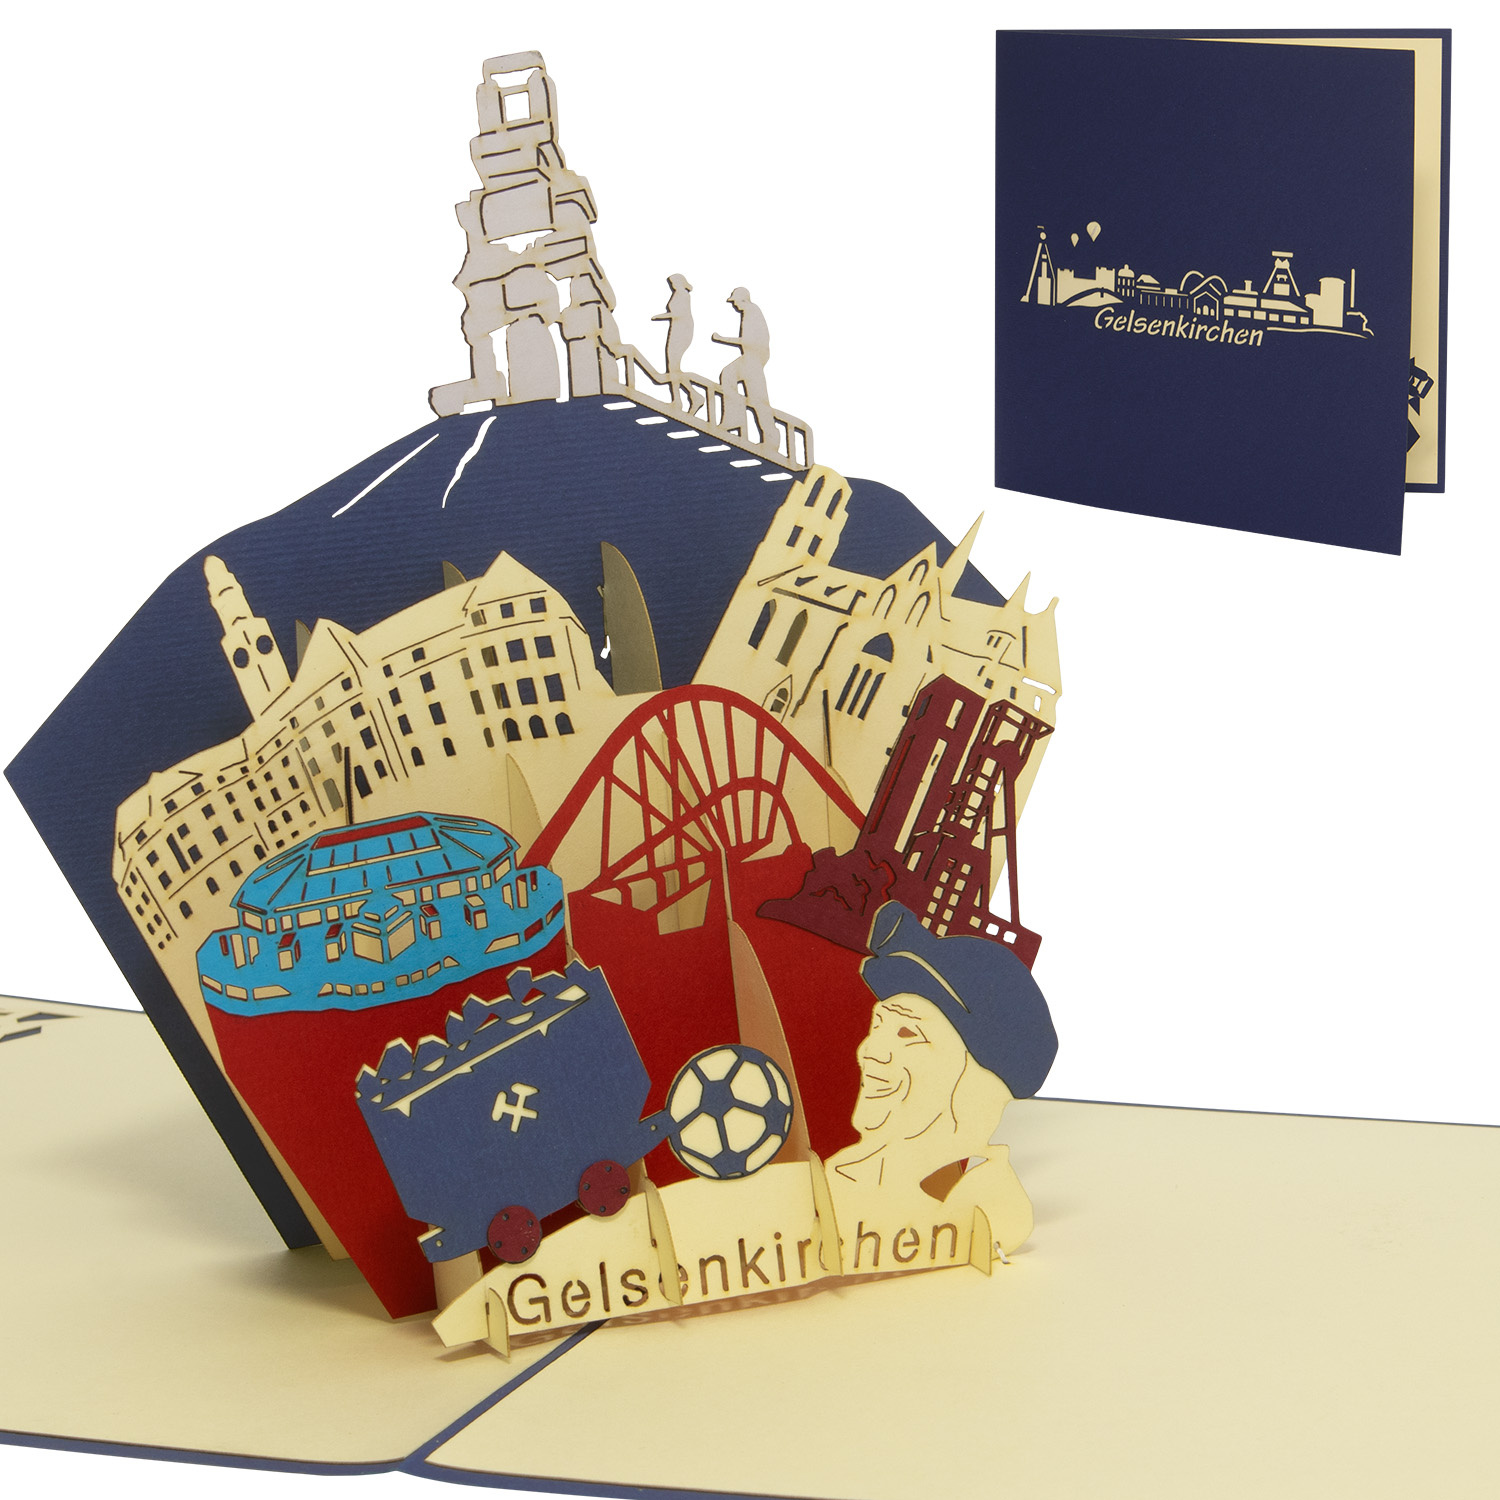 LINPOPUP Pop Up 3D Card, Birthday Card, Greeting Card, Travel Voucher,Gelsenkirchen, LIN17633, LINPopUp®, N366